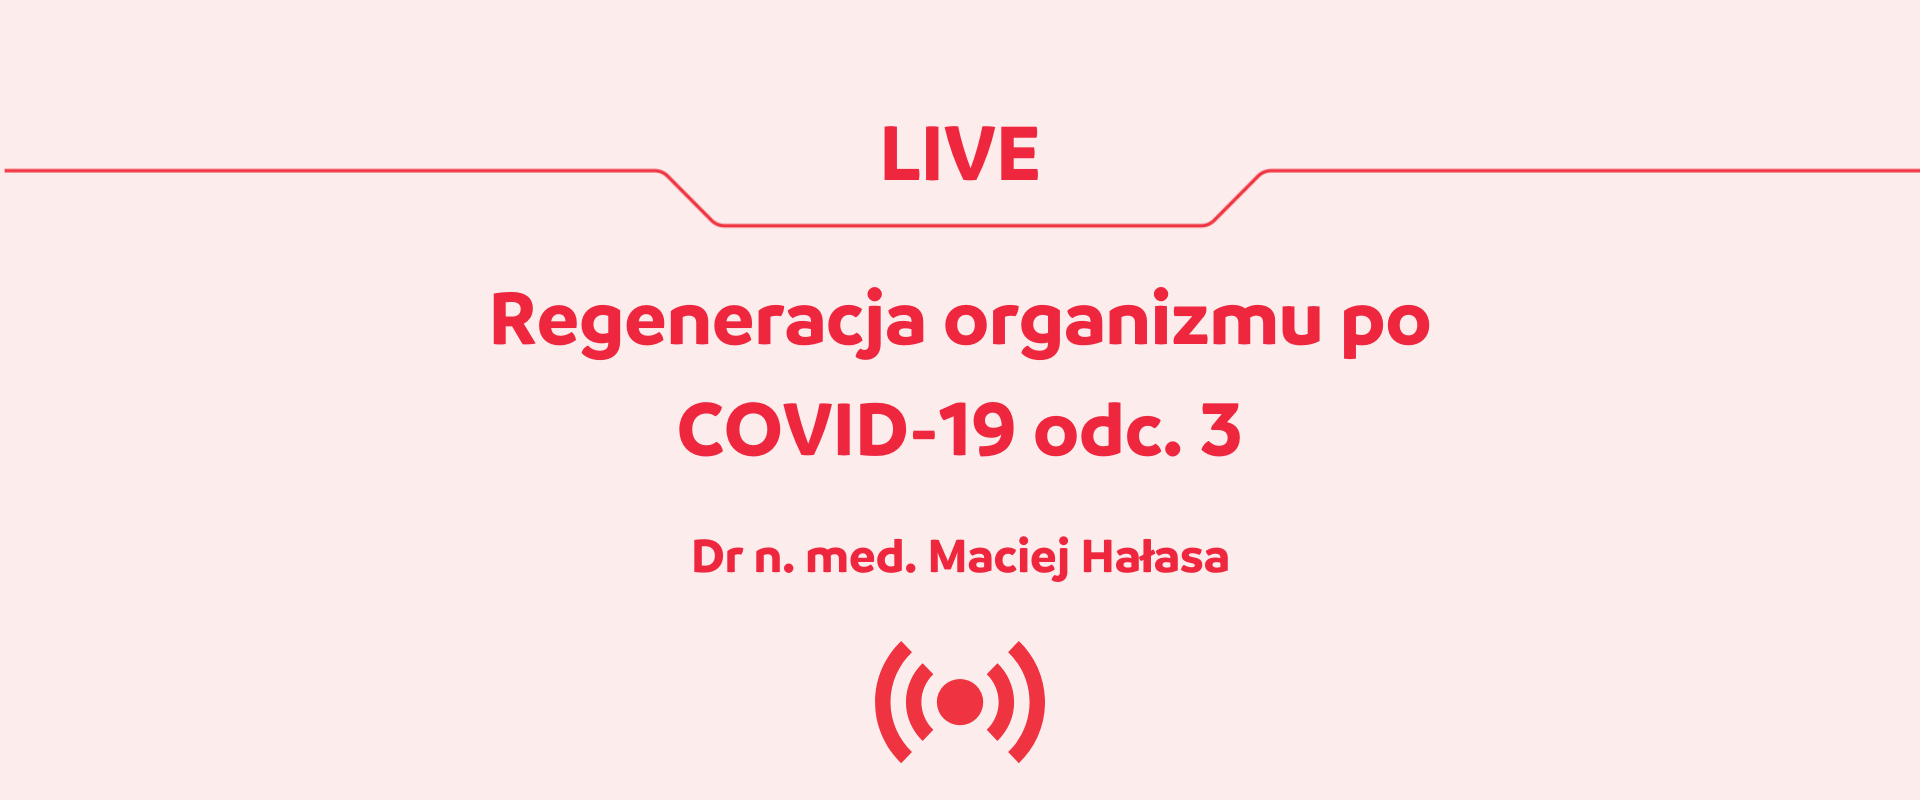 Genactiv Studio - Regeneracja organizmu po COVID-19 | Live z ekspertem